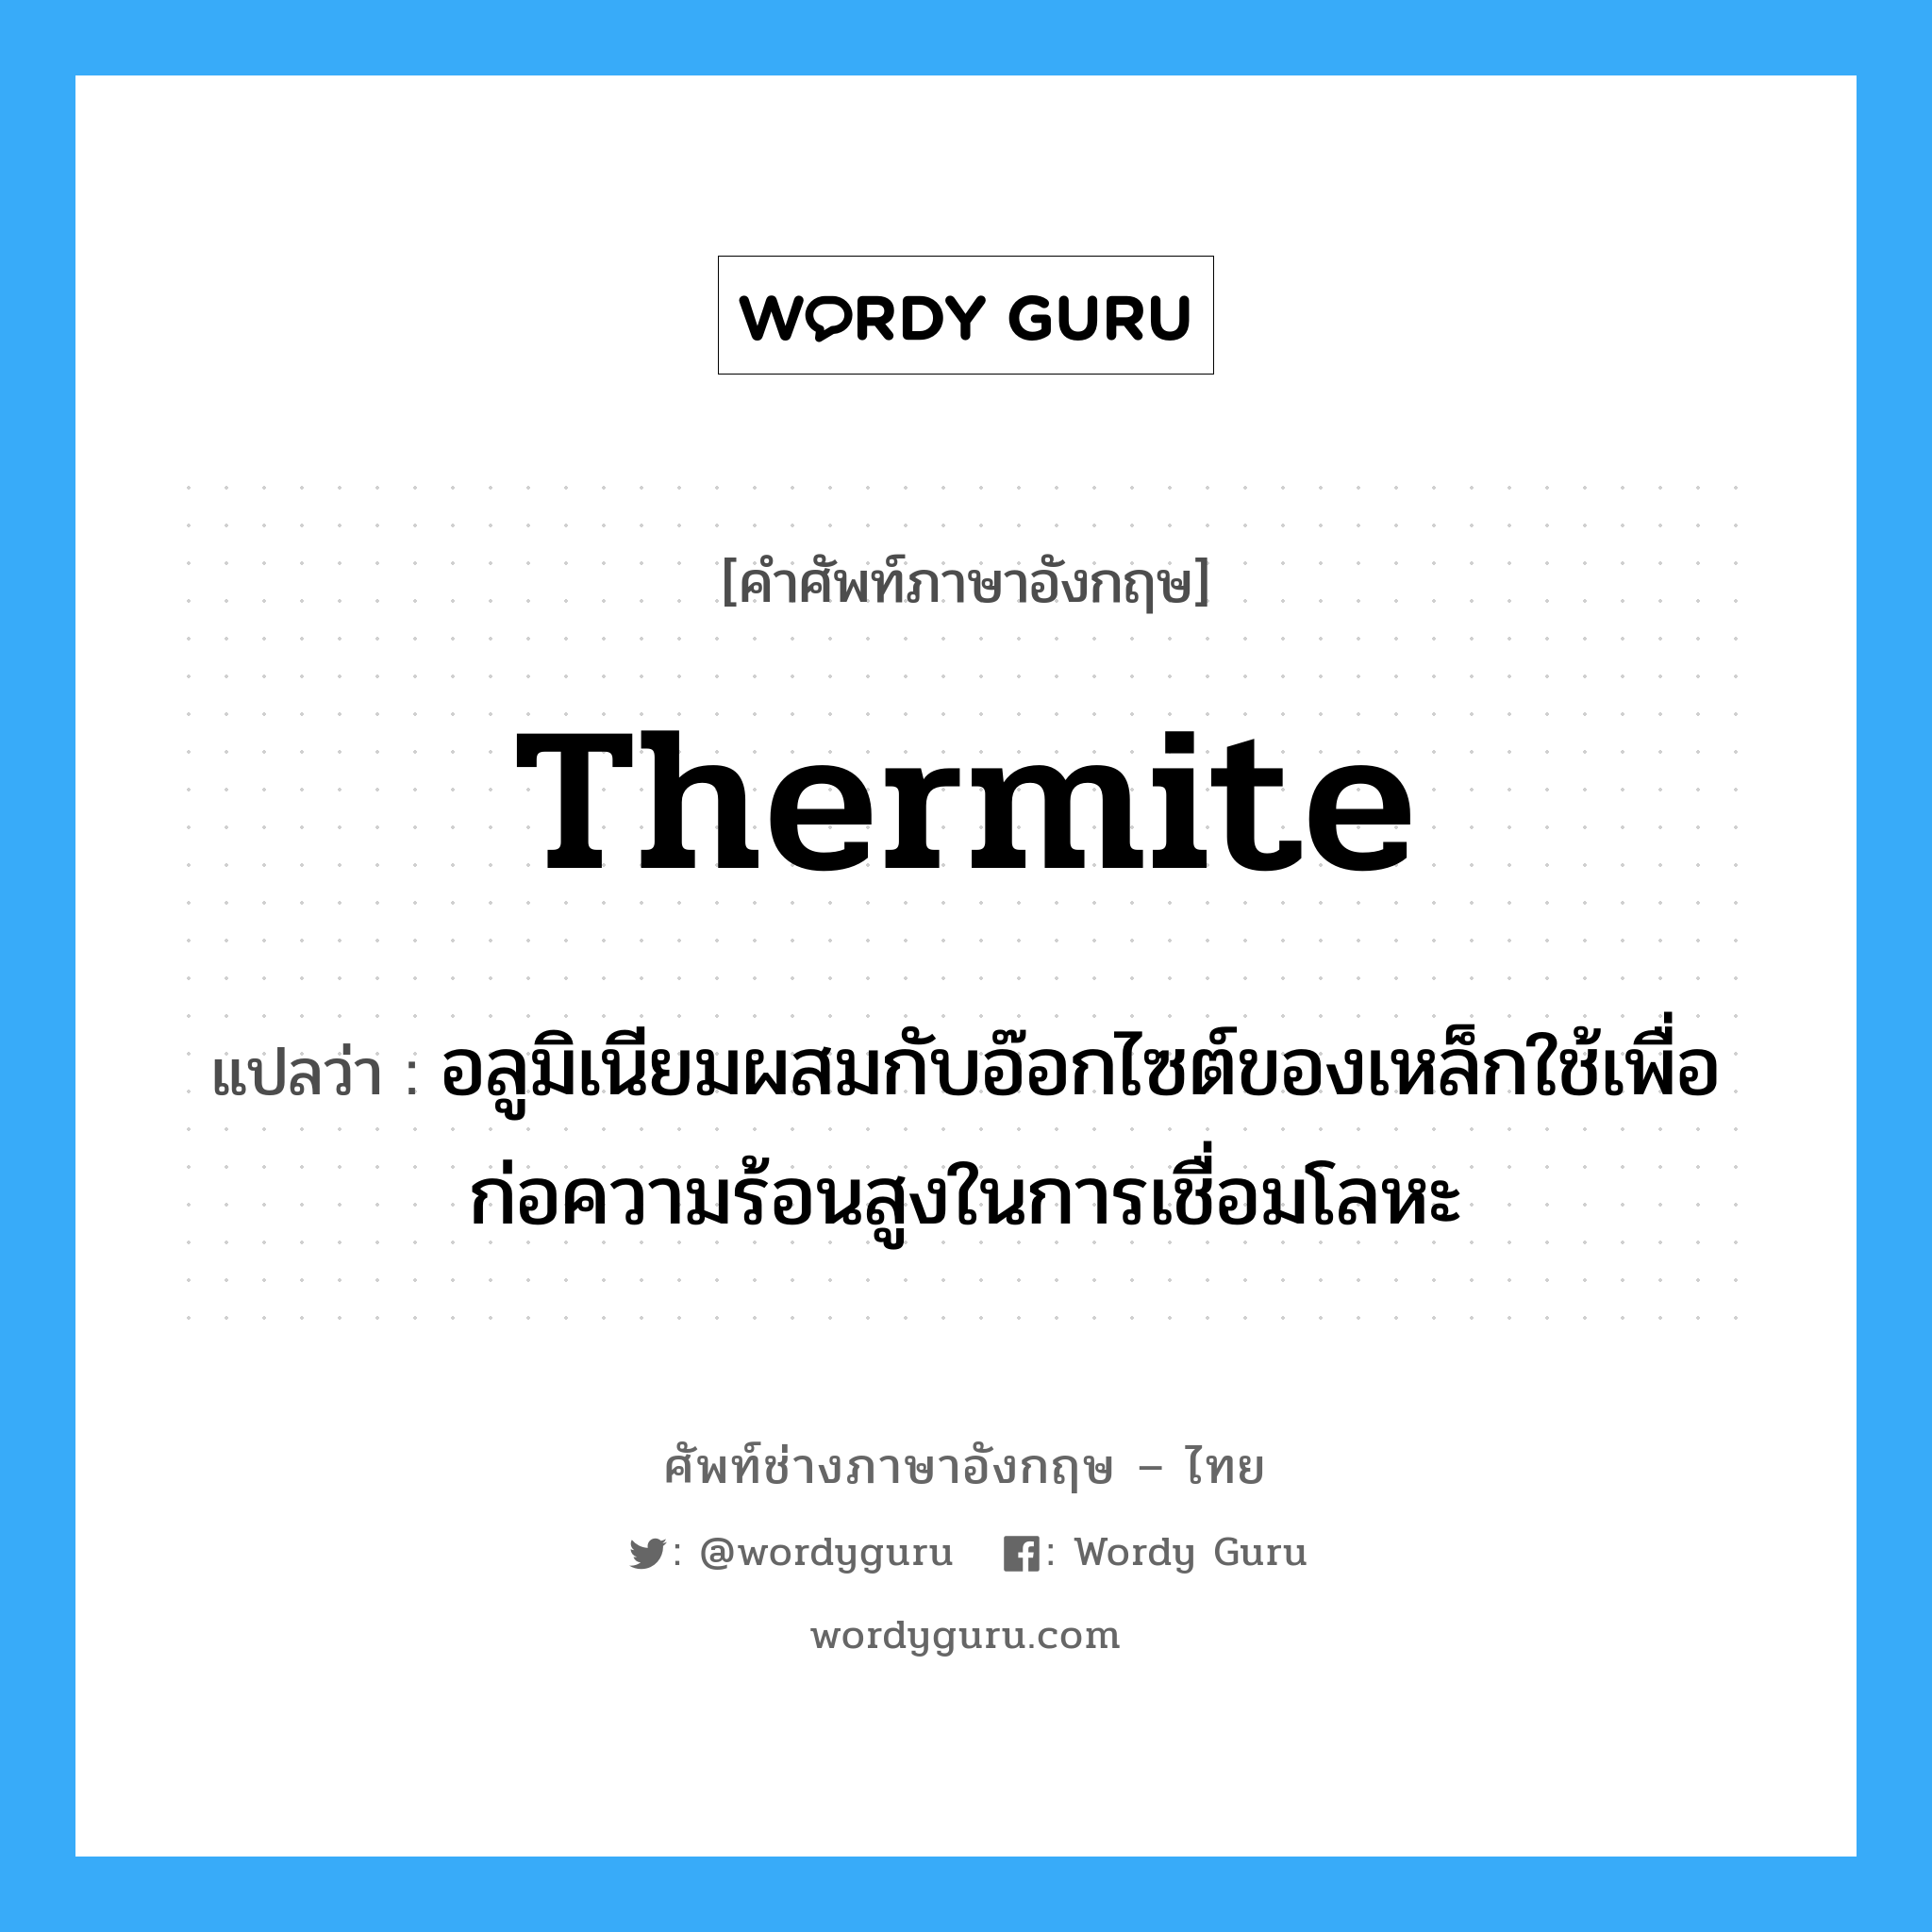 thermite แปลว่า?, คำศัพท์ช่างภาษาอังกฤษ - ไทย thermite คำศัพท์ภาษาอังกฤษ thermite แปลว่า อลูมิเนียมผสมกับอ๊อกไซต์ของเหล็กใช้เพื่อก่อความร้อนสูงในการเชื่อมโลหะ